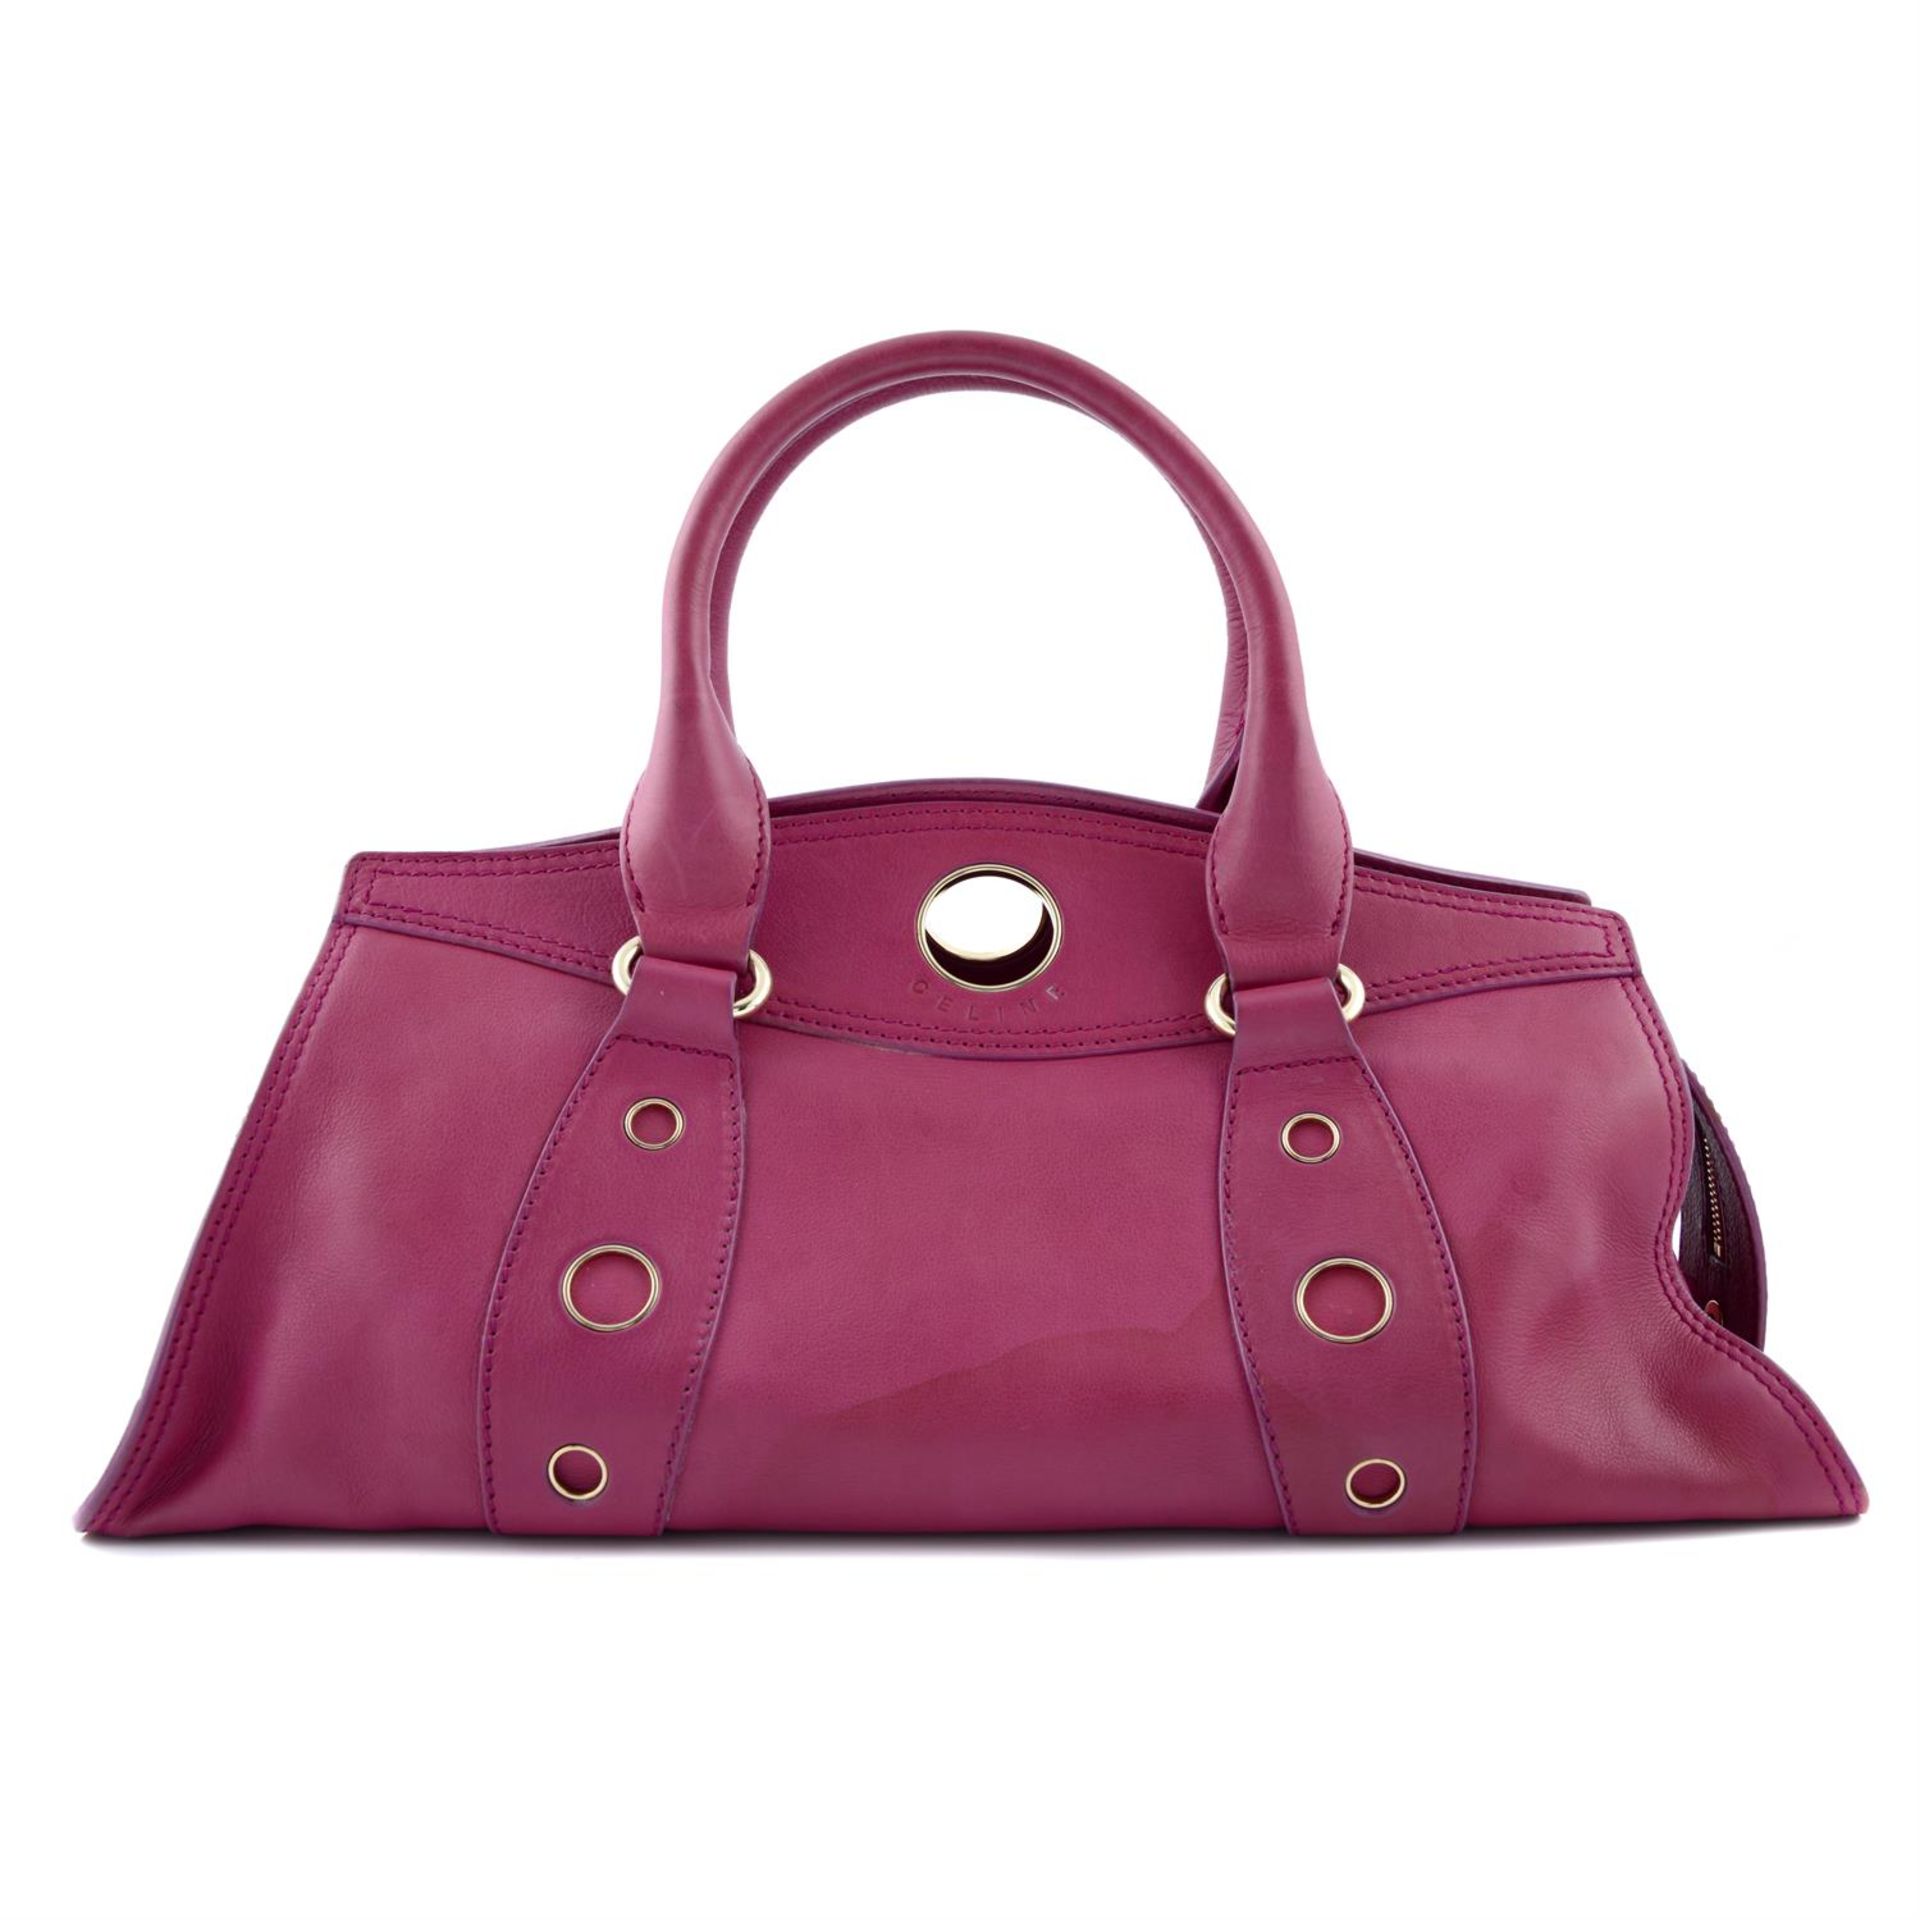 CÉLINE - a fuchsia leather handbag.